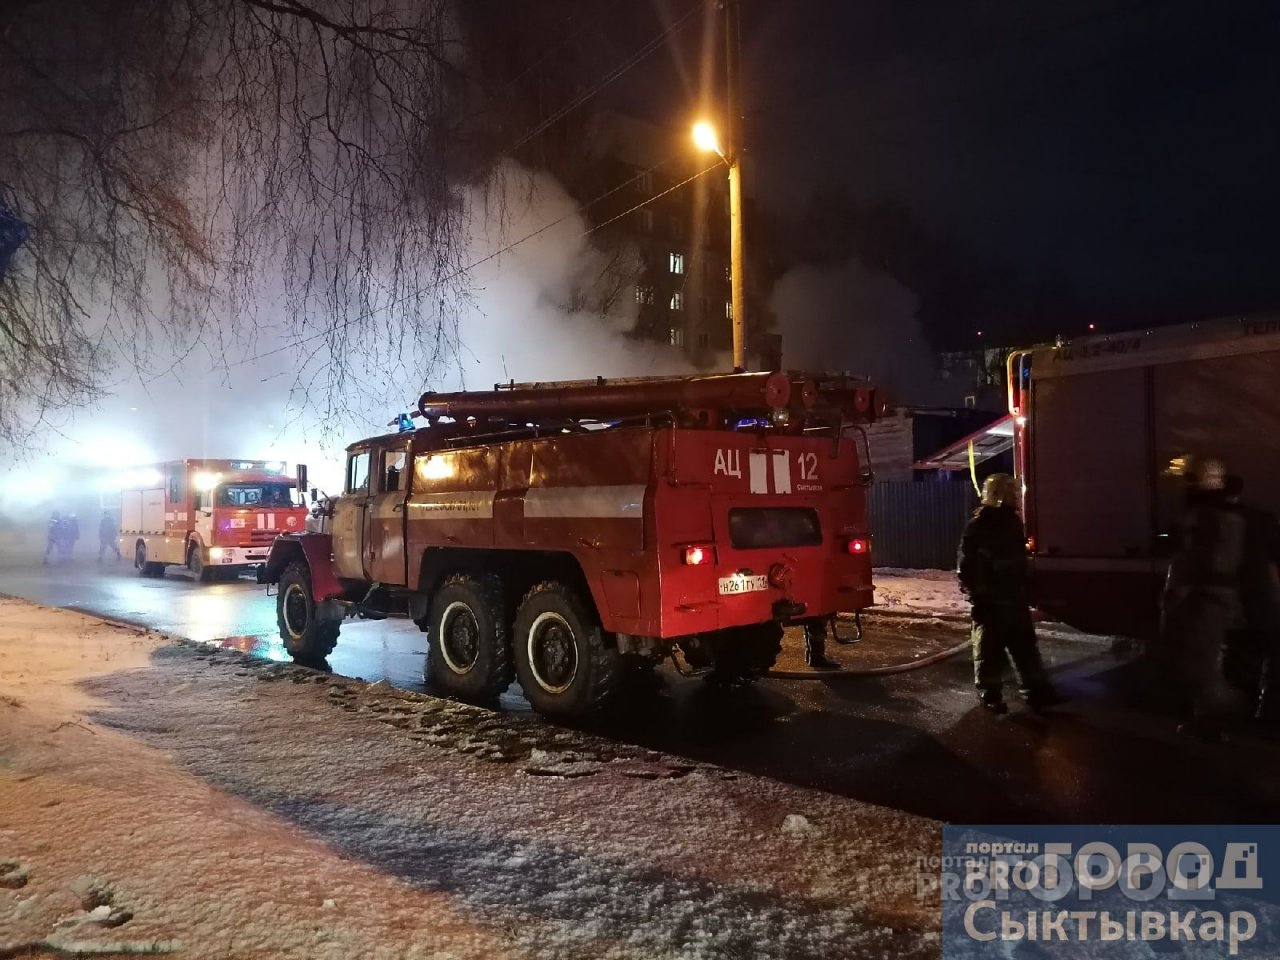 Стала известна причина жуткого пожара в Сыктывкаре, где погиб мужчина